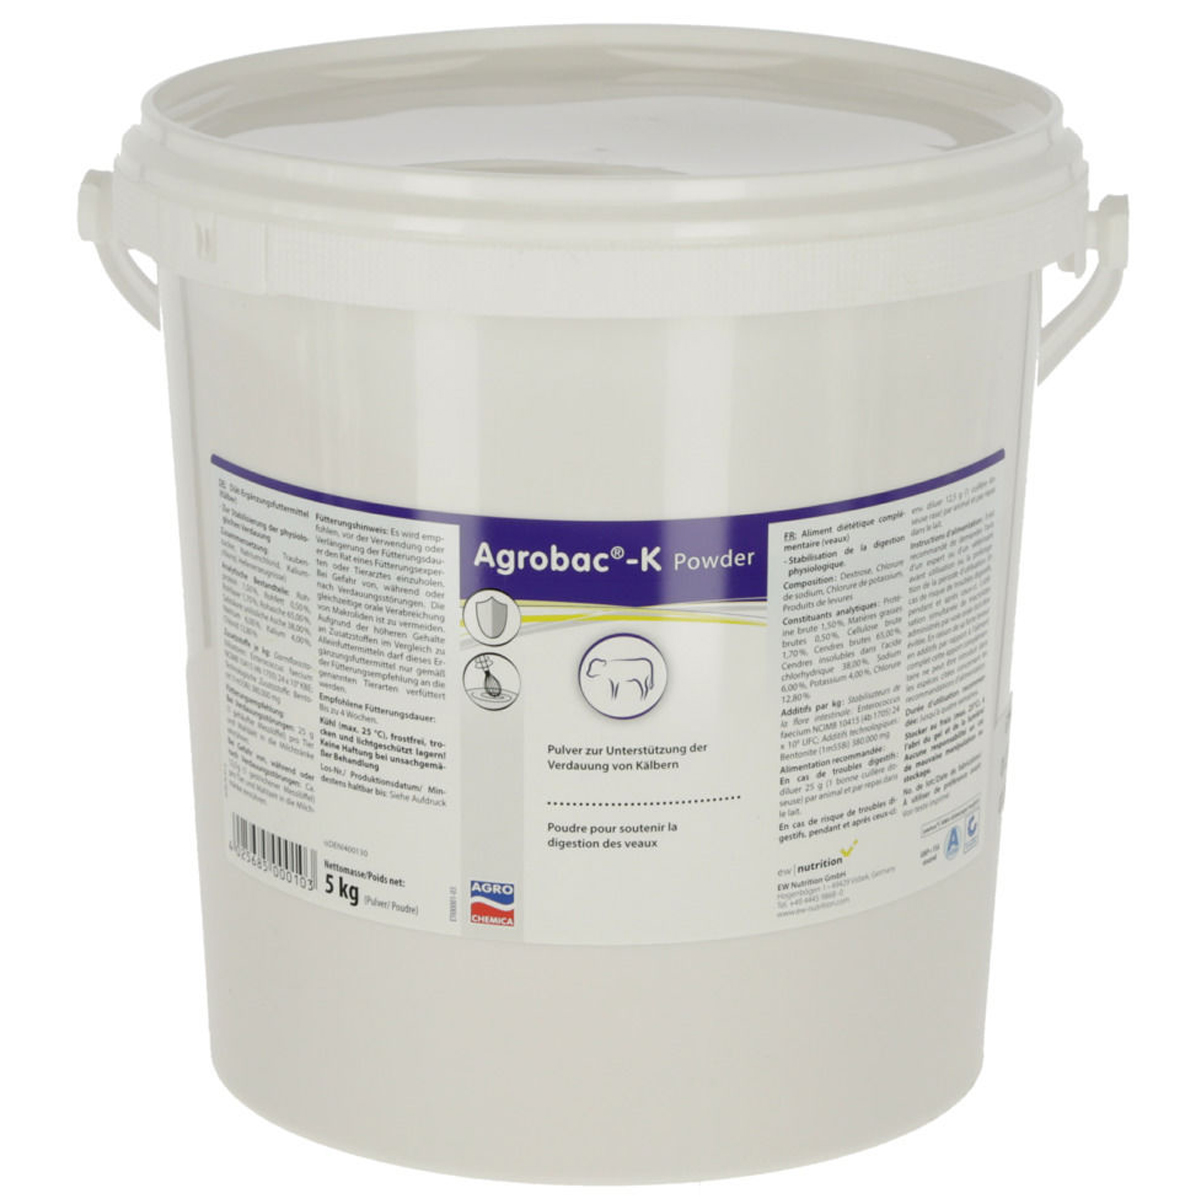 Agrobac-K Powder polvere a supporto della digestione dei vitelli 5 kg